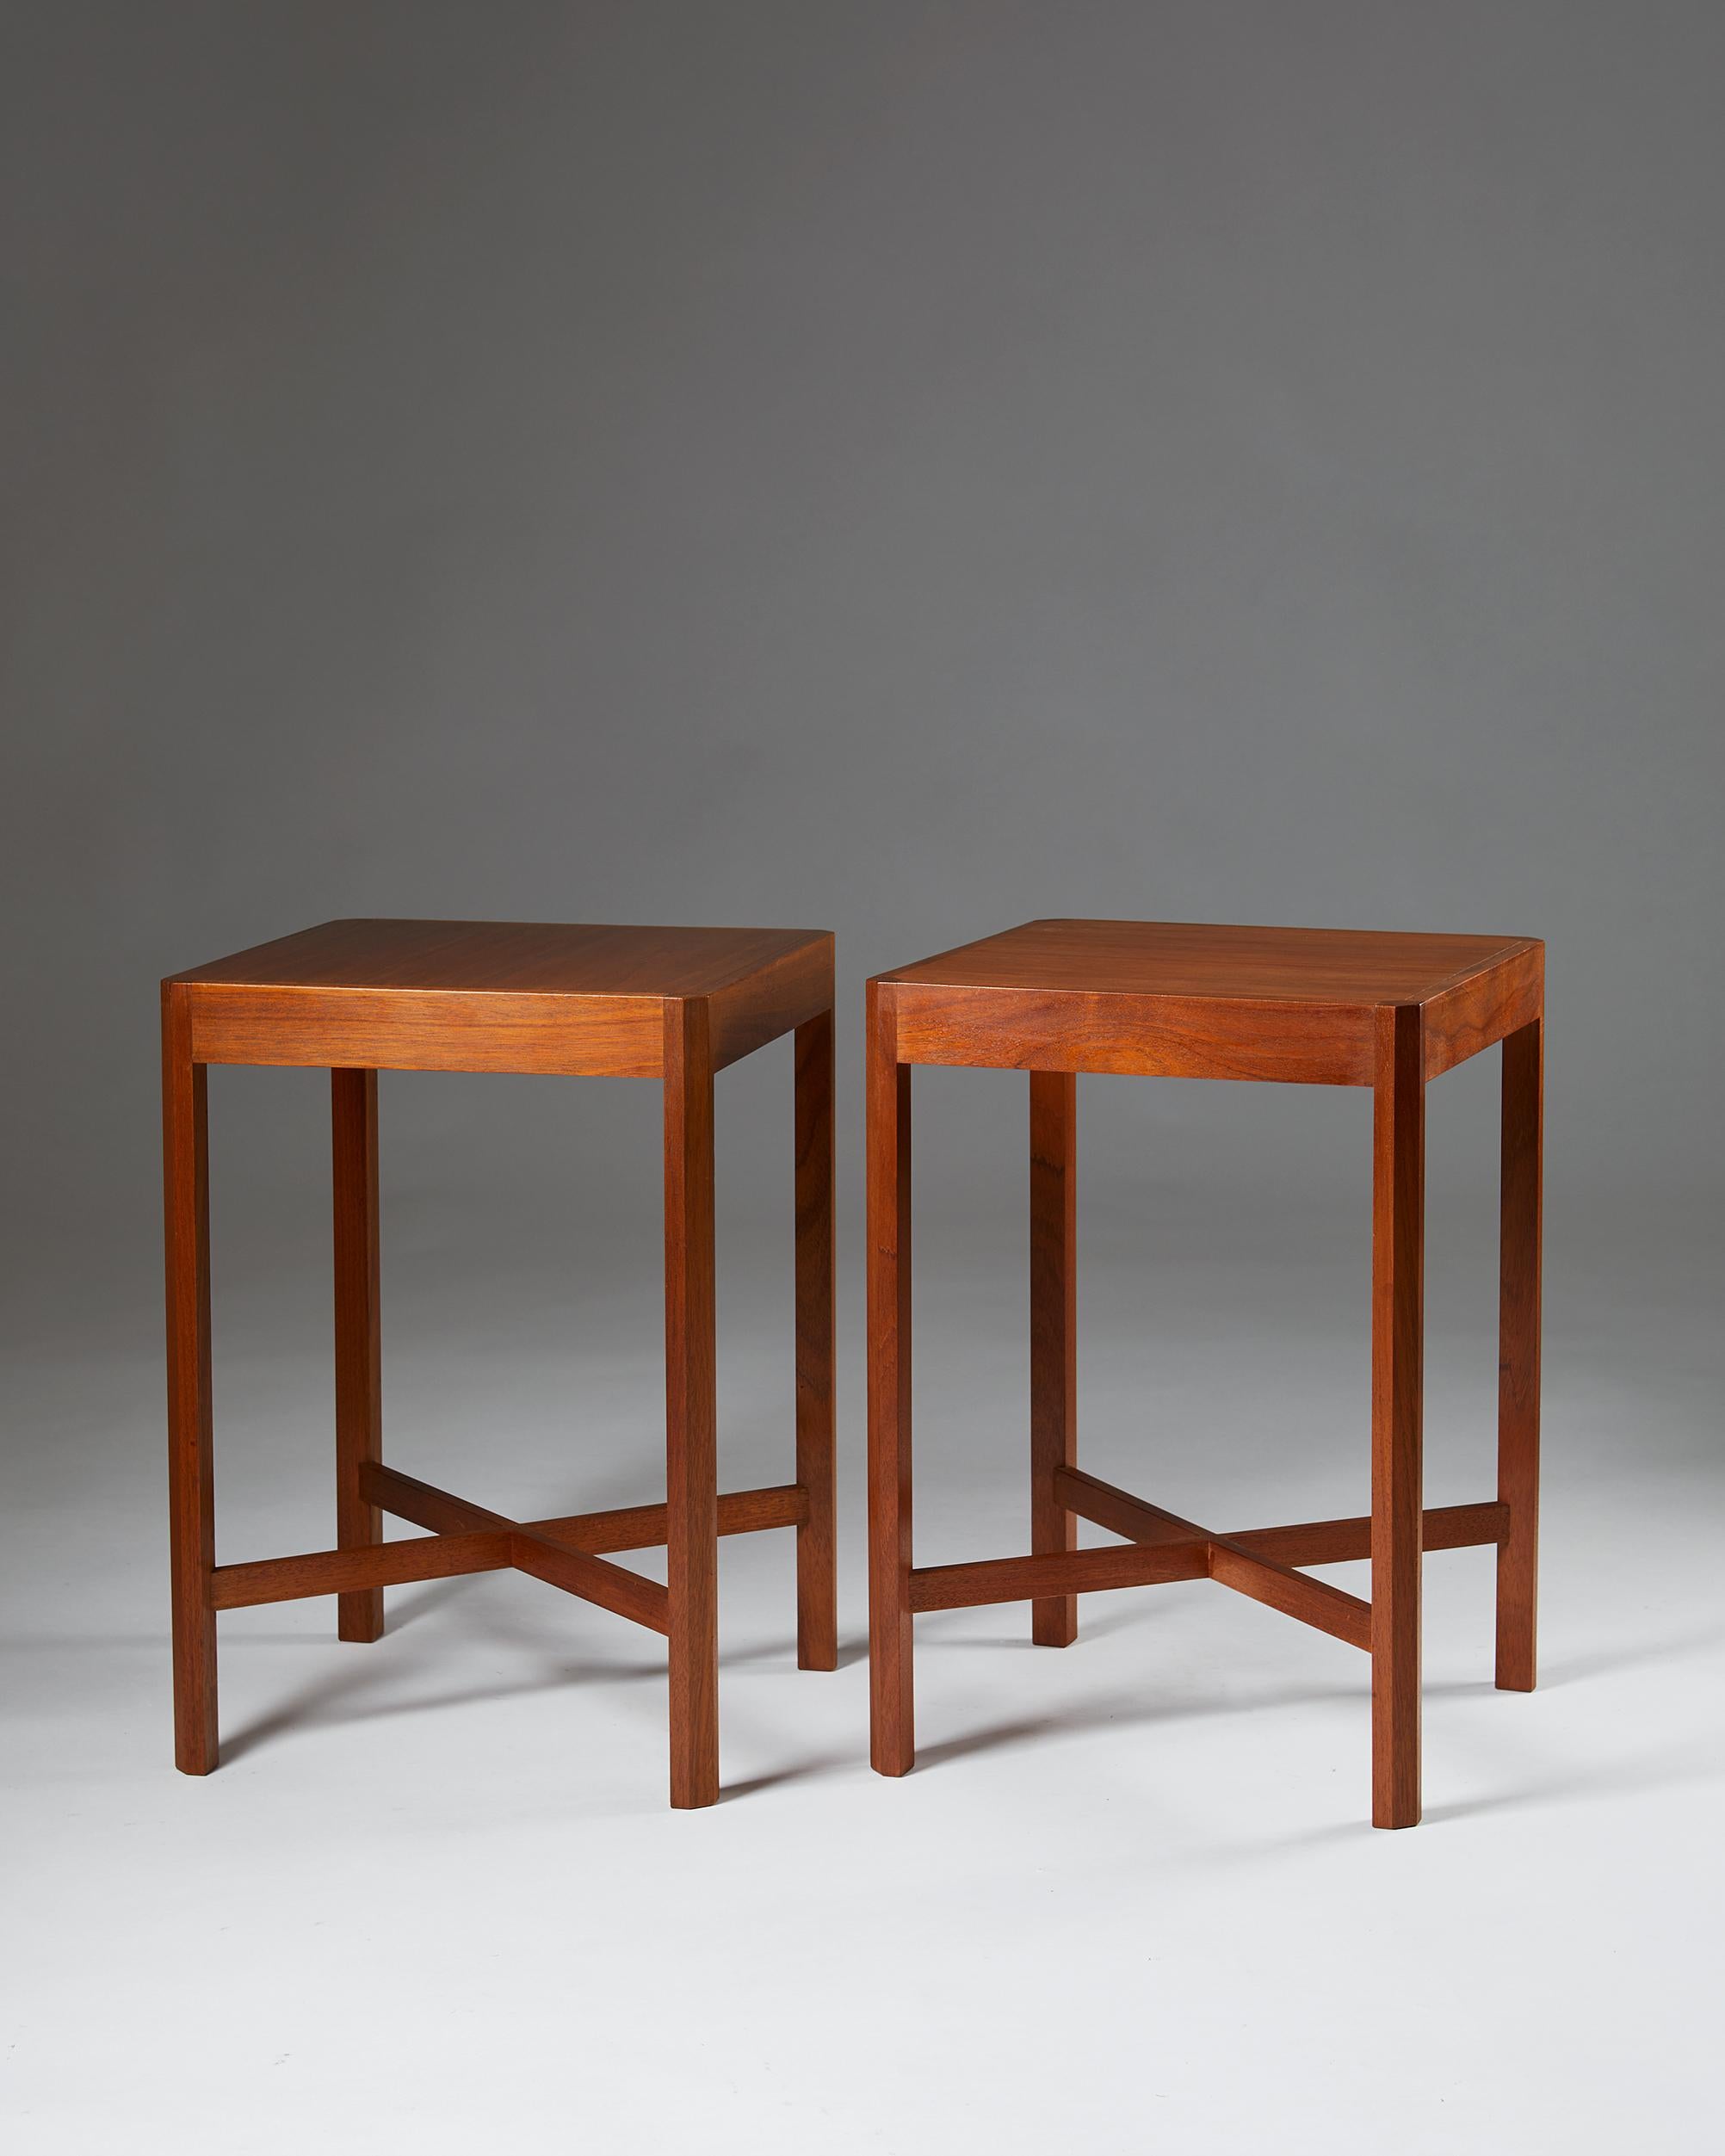 Mahogany. Set of two side tables designed by Stig Lönngren for Hi-Gruppen, Sweden, 1969.

Measures: H 60 cm/ 23 5/8